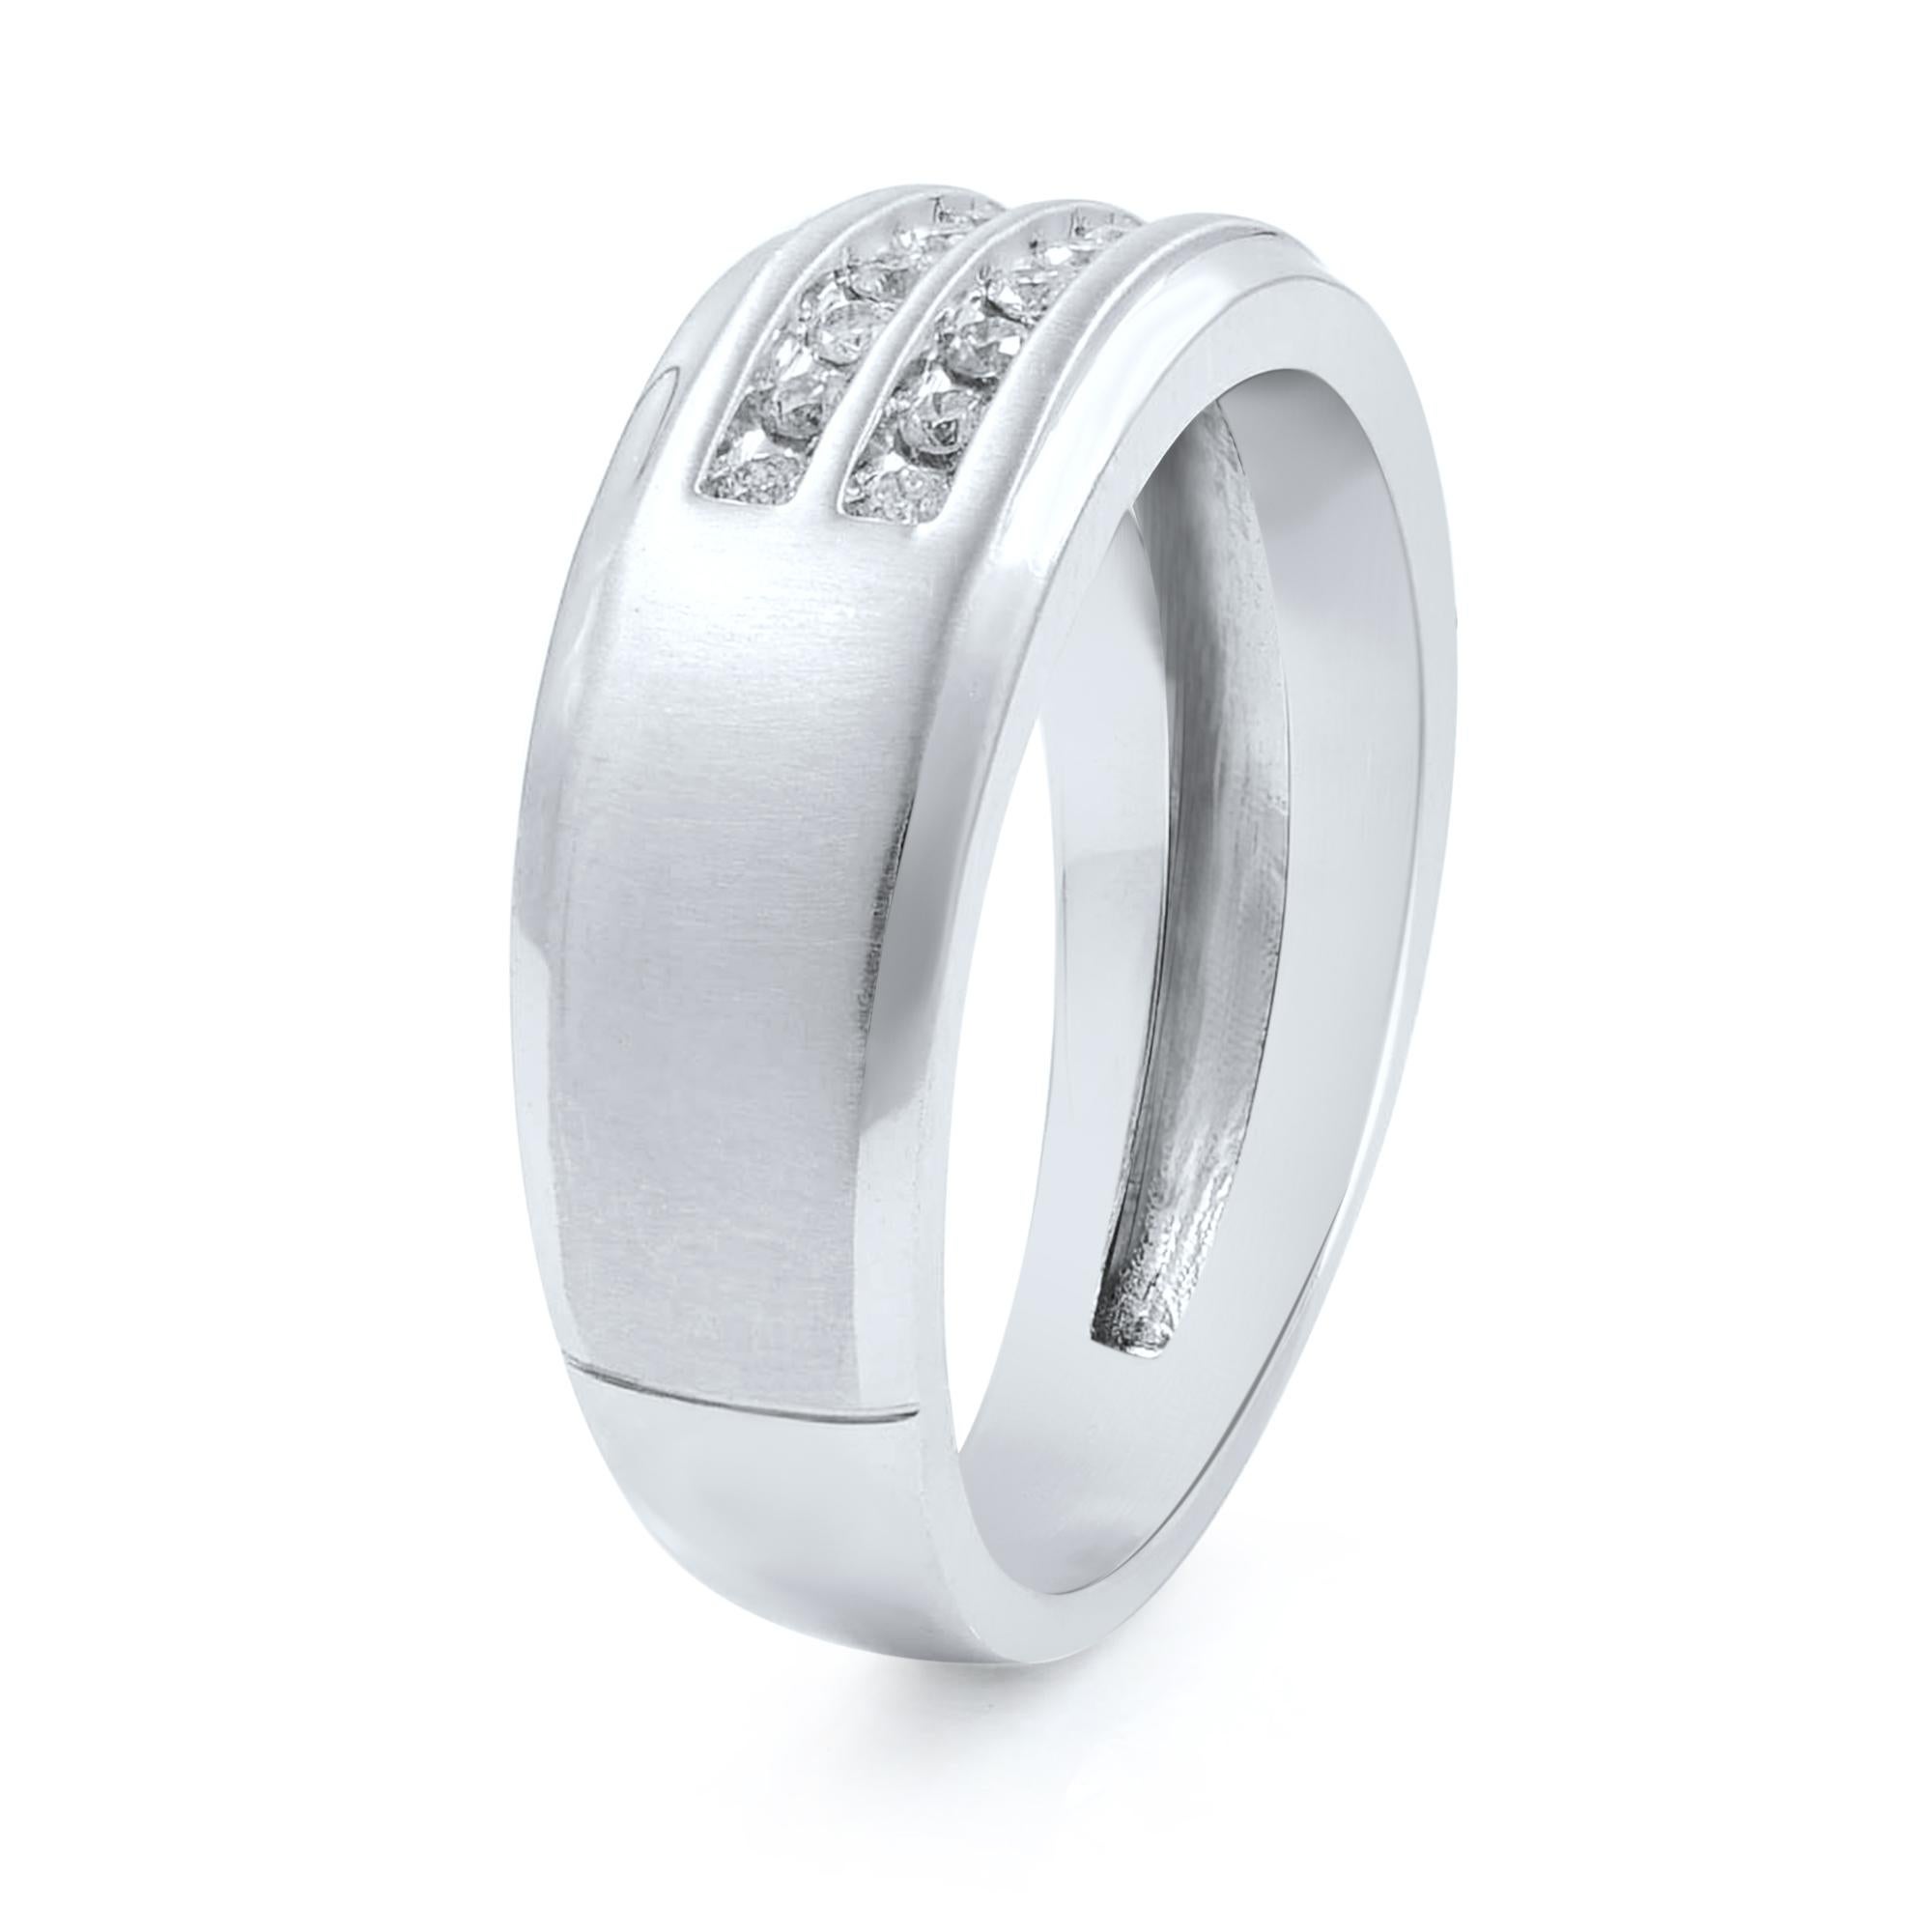 Modern 10 Karat White Gold Round Cut Diamond Wedding Band Ring for Men 0.36 Carat